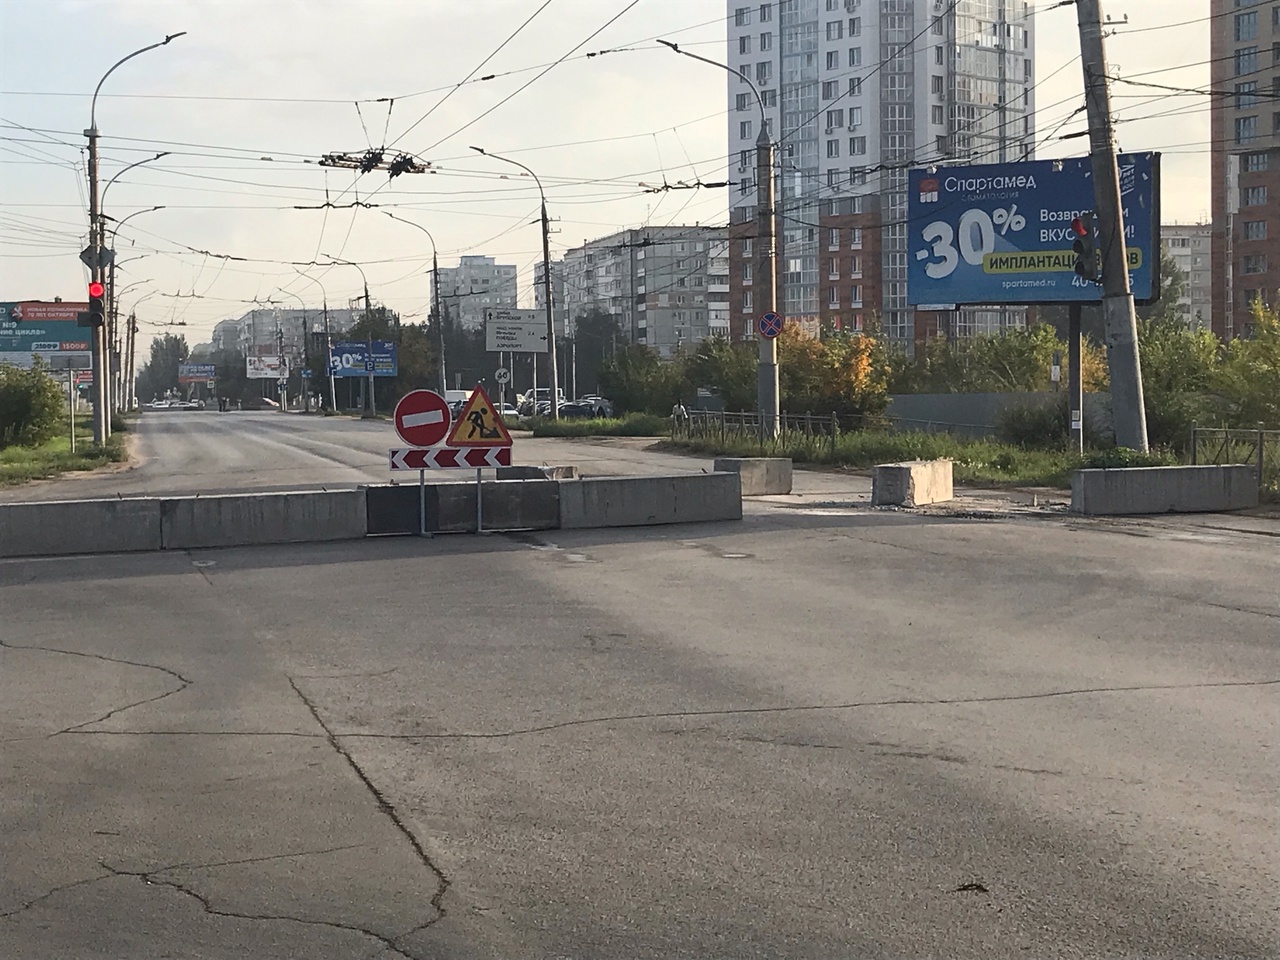 Госэкспертиза одобрила проект реконструкции бульвара Архитекторов в Омске #Омск #Общество #Сегодня